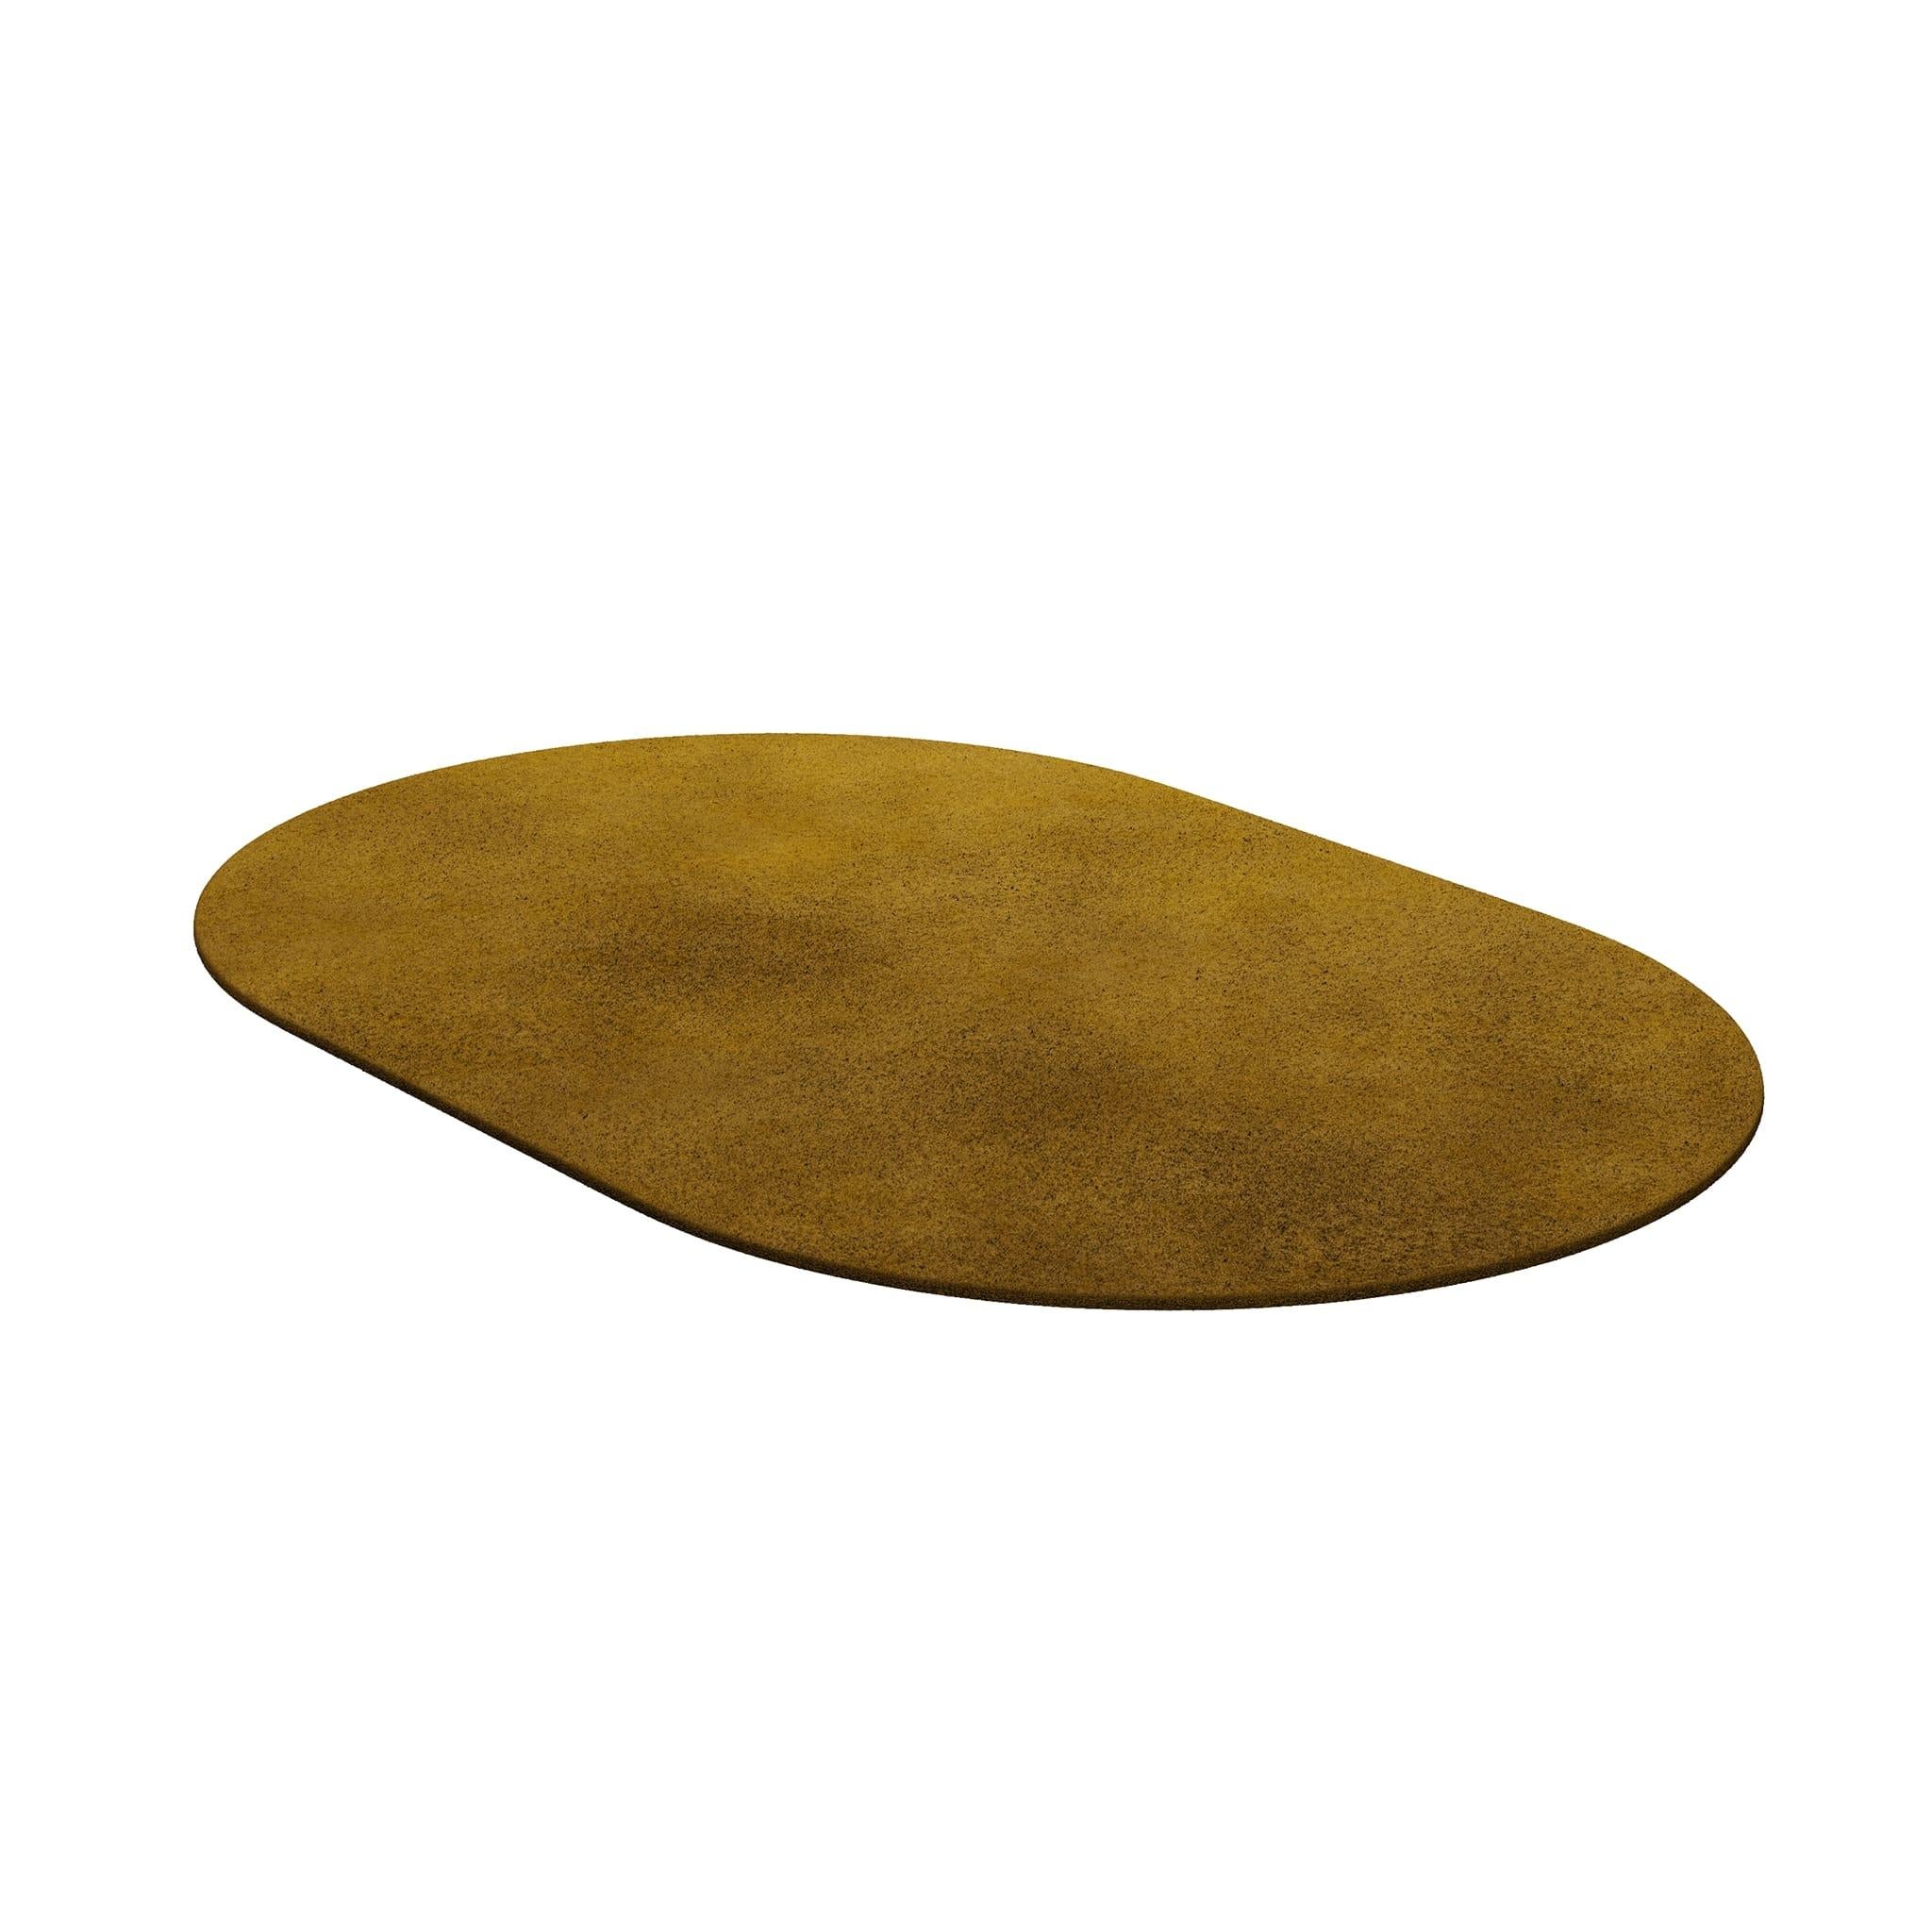 Tapis Oval Musk #017 ist ein moderner Teppich mit einer regelmäßigen Form. Unsere unentbehrlichen Teppiche sind in verschiedenen Formen und trendigen Farbtönen erhältlich, die mit Bedacht ausgewählt wurden, um eine Inneneinrichtung zu ergänzen, die